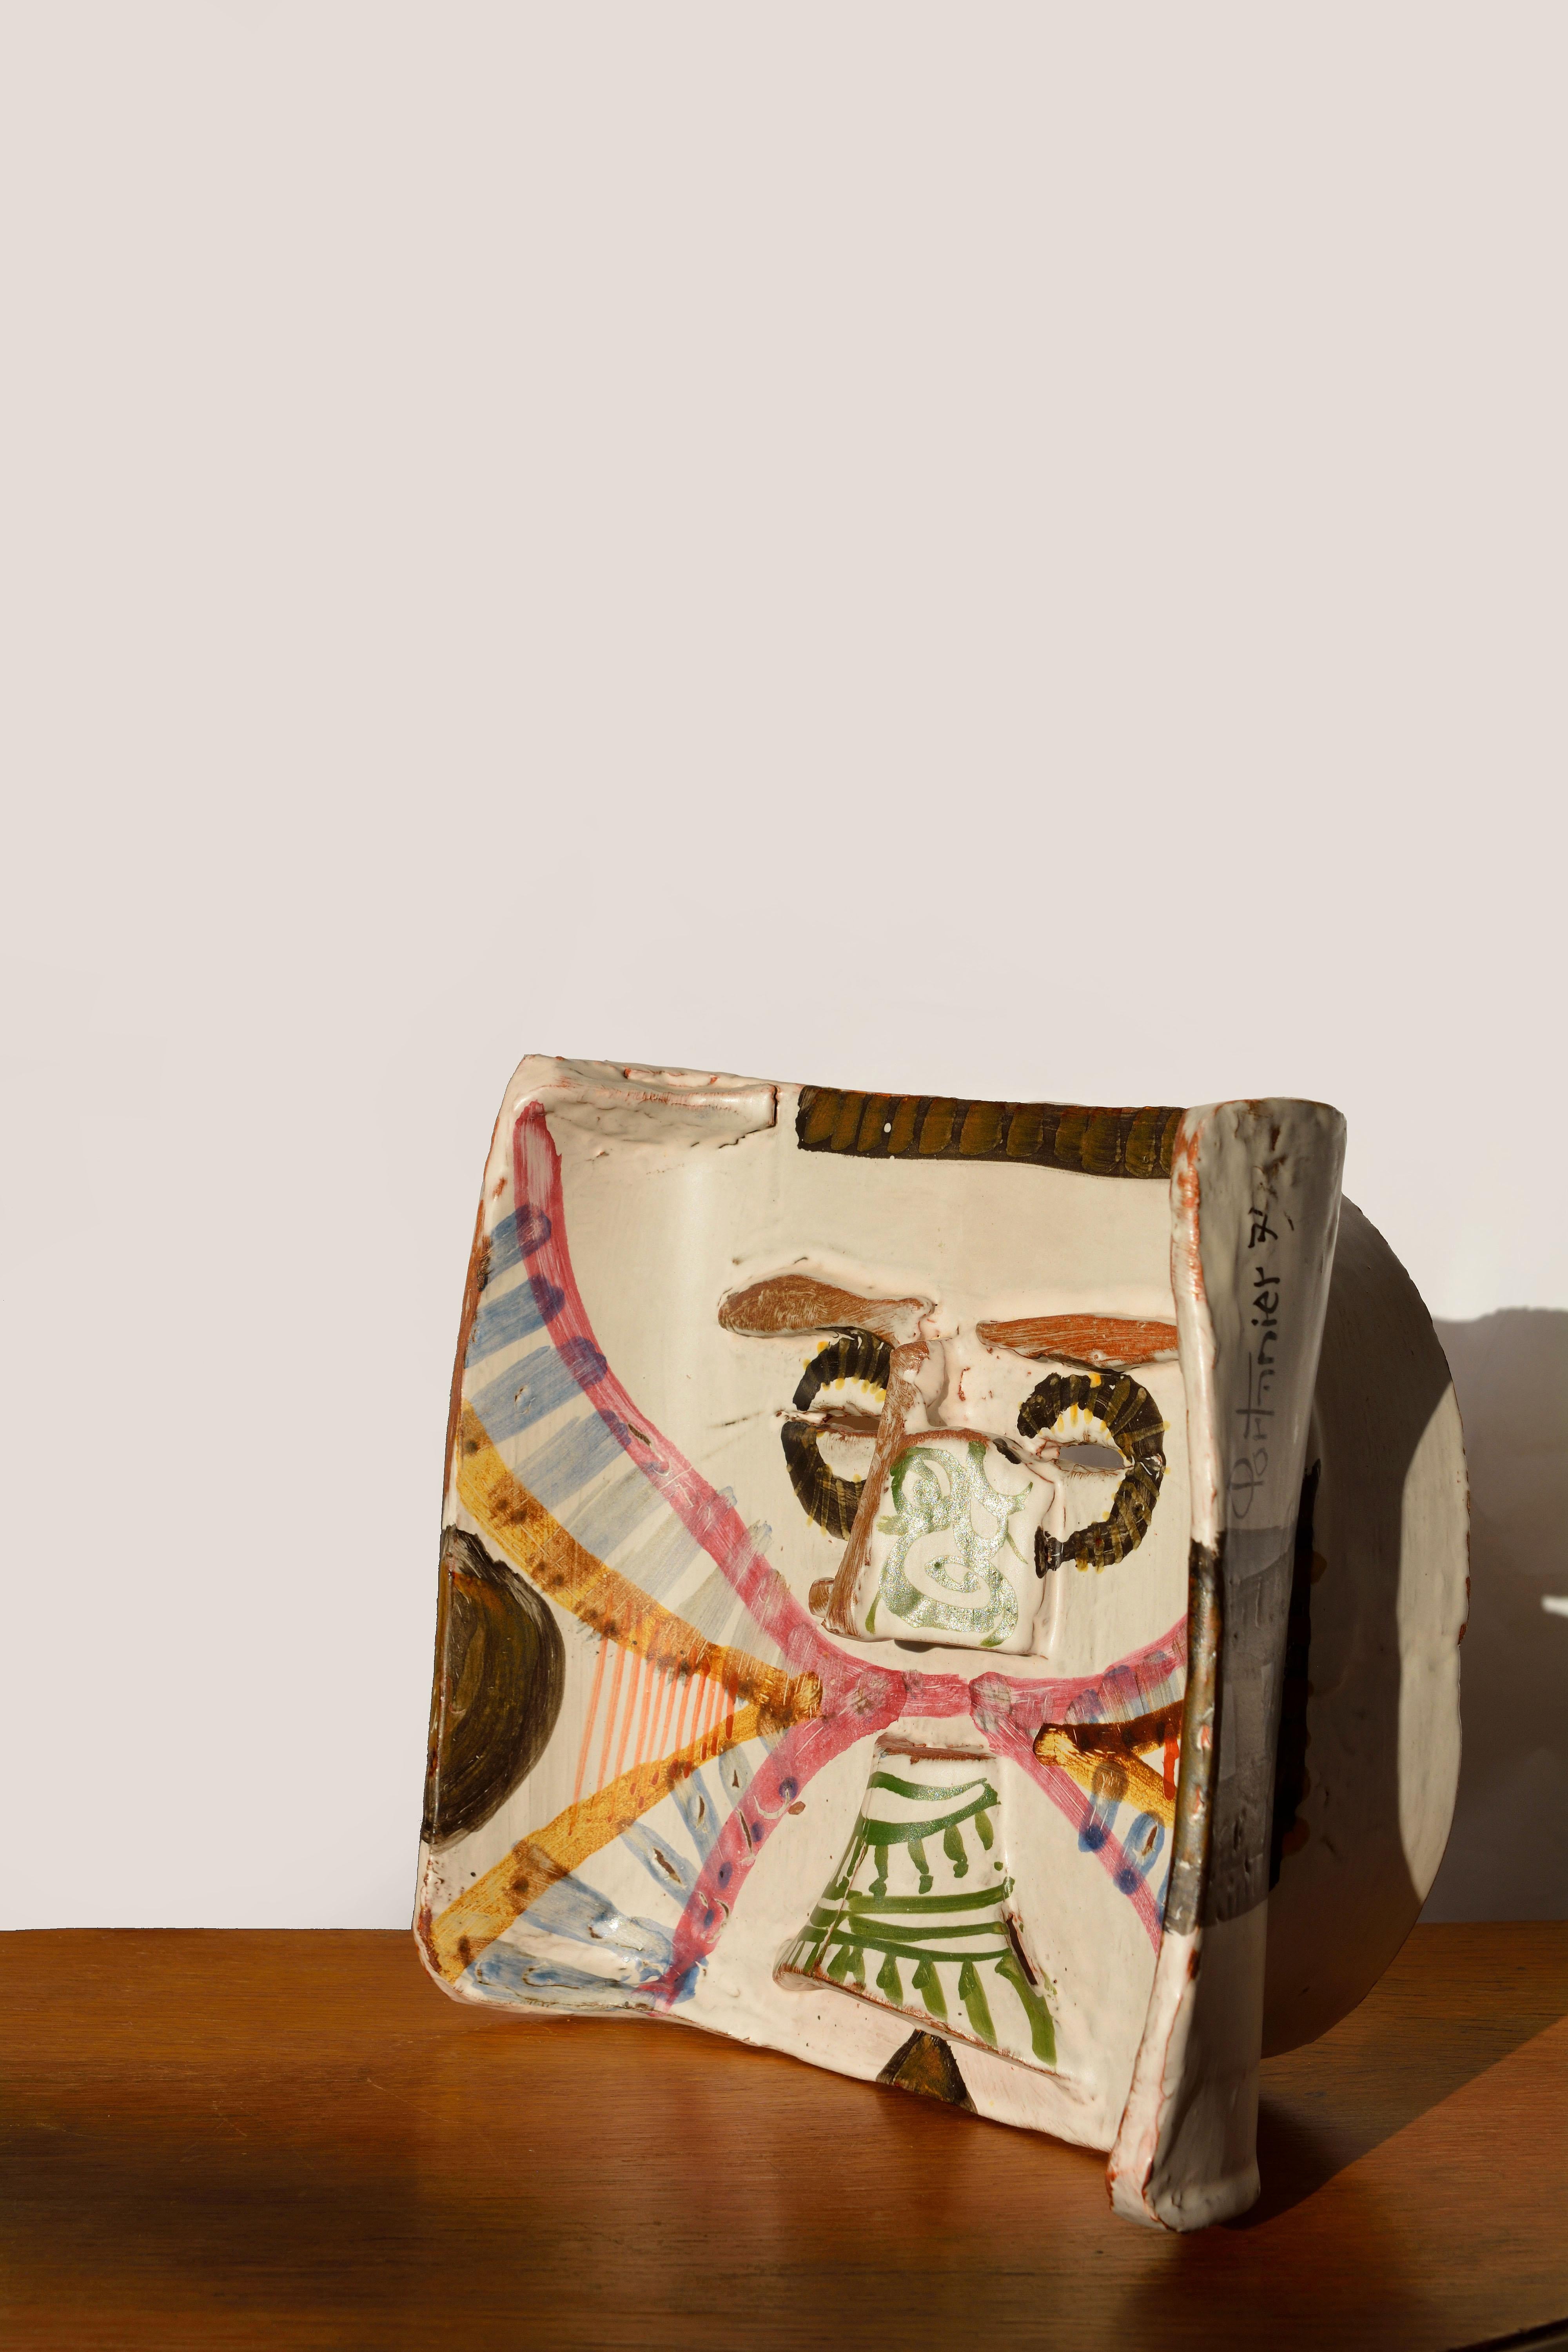 Gilbert Portanier, Maske
Frankreich, Vallauris, 1979.
Unterzeichnet
Einzigartiges Stück

Emaillierte Keramikmaske mit polychromem Dekor.
Nase, Bögen und Bart in Relief und zwei Schlitze zur Darstellung der Augen.
   
Maße: H max 23 cm / 11